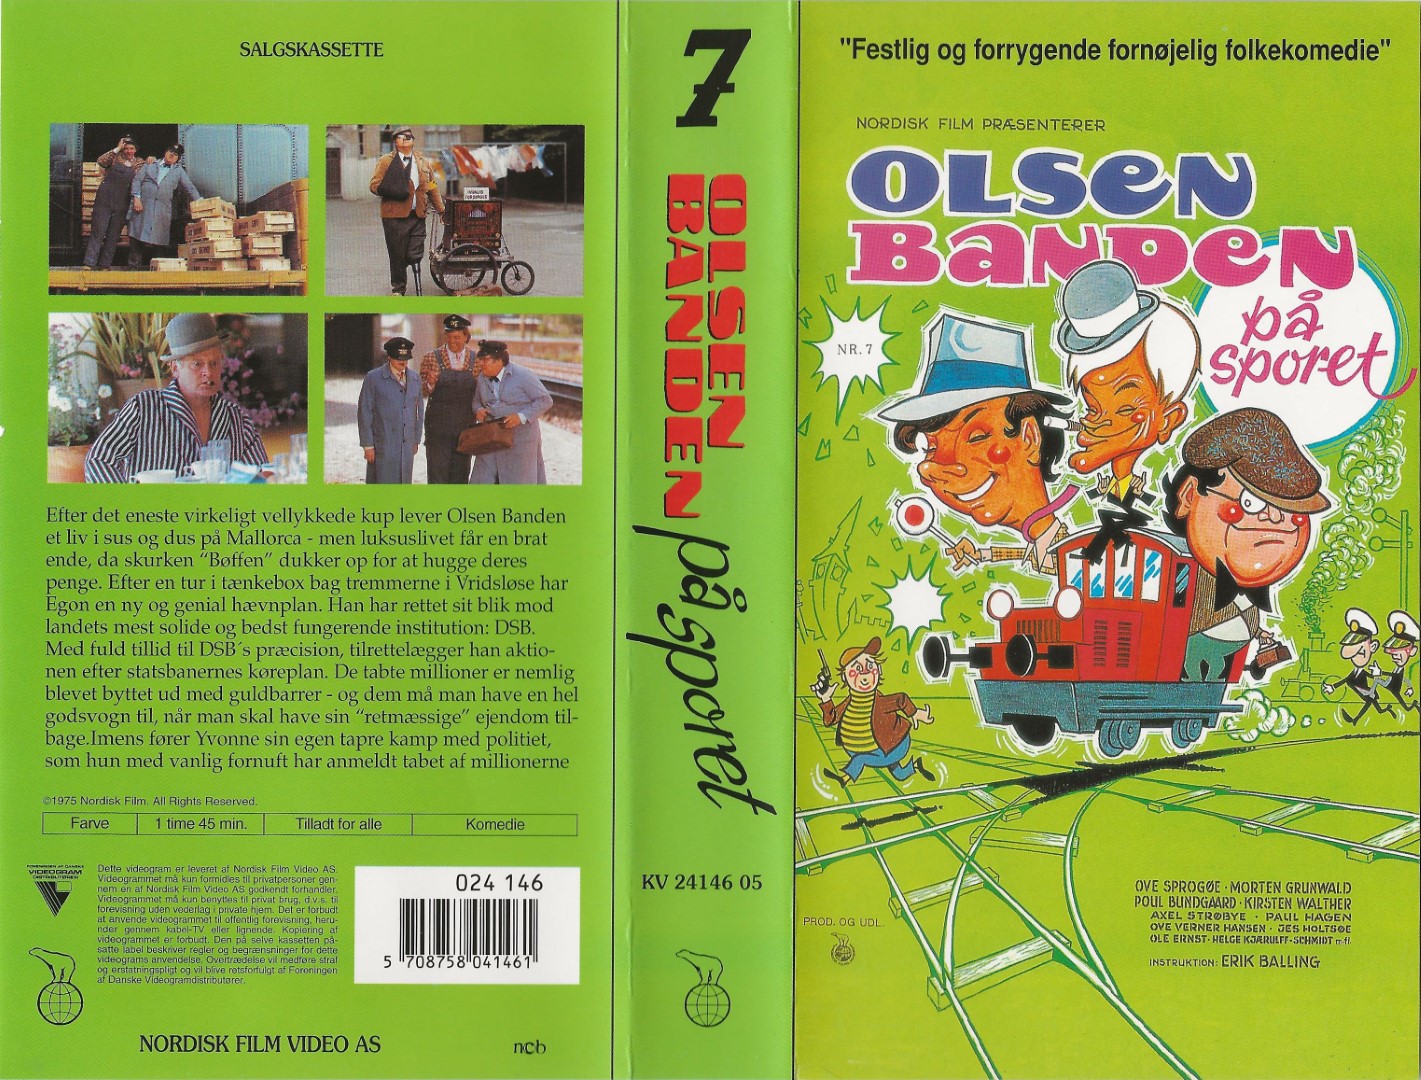 Olsen Banden 7 - Olsen Banden på sporet  VHS Nordisk Film 1994